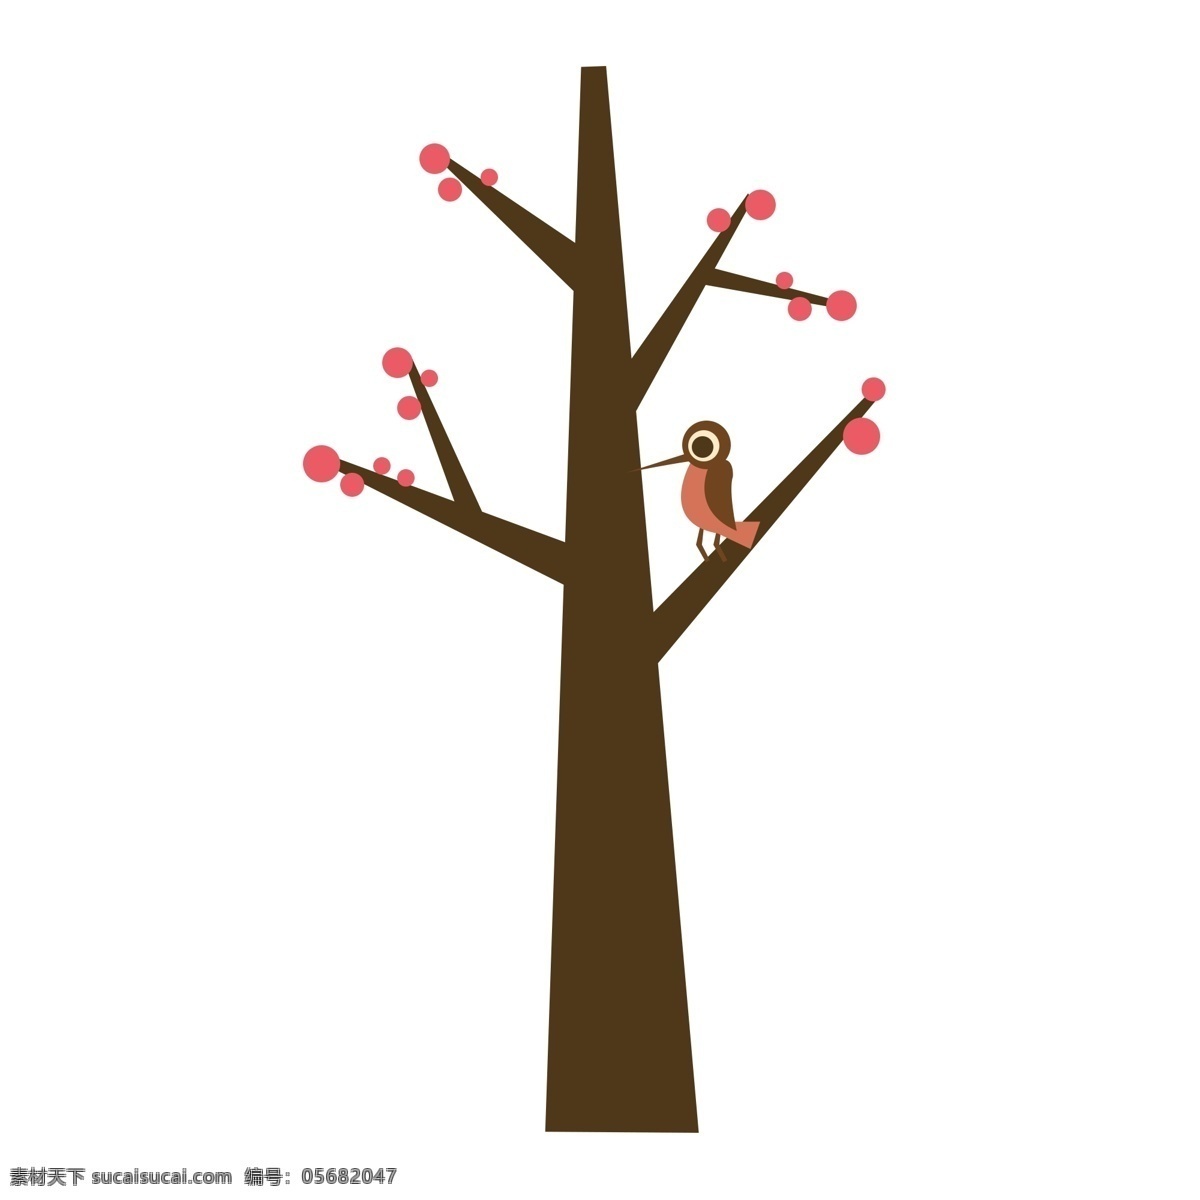 树枝 上 可爱 啄木鸟 矢量 咖啡色树干 红色果实 站立 超级 儿童插画 童趣